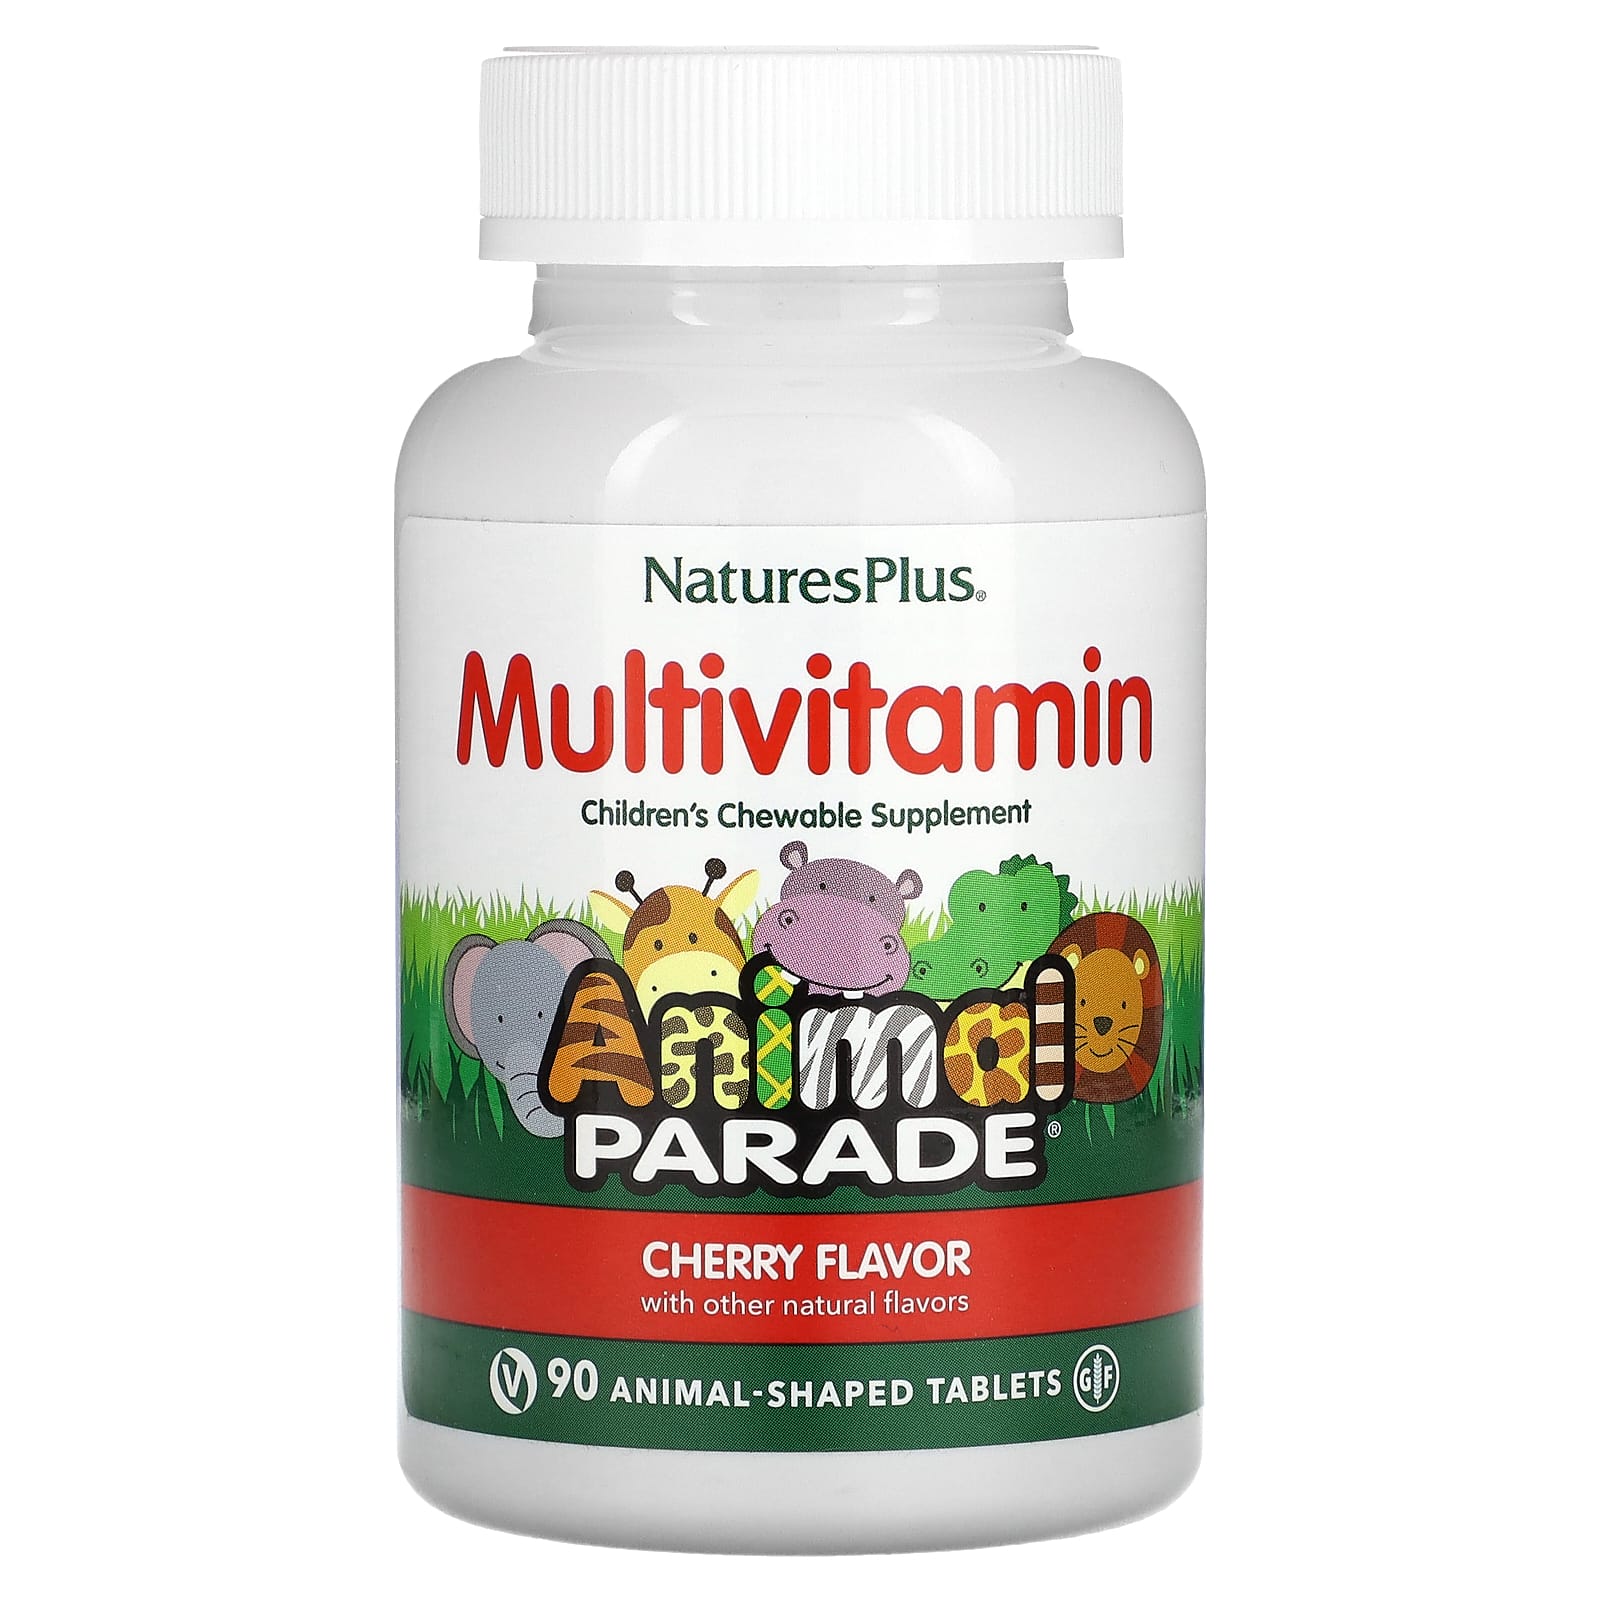 Мультивитамины NaturesPlus с микроэлементами для детей, со вкусом вишни, 90 таблеток в форме животных